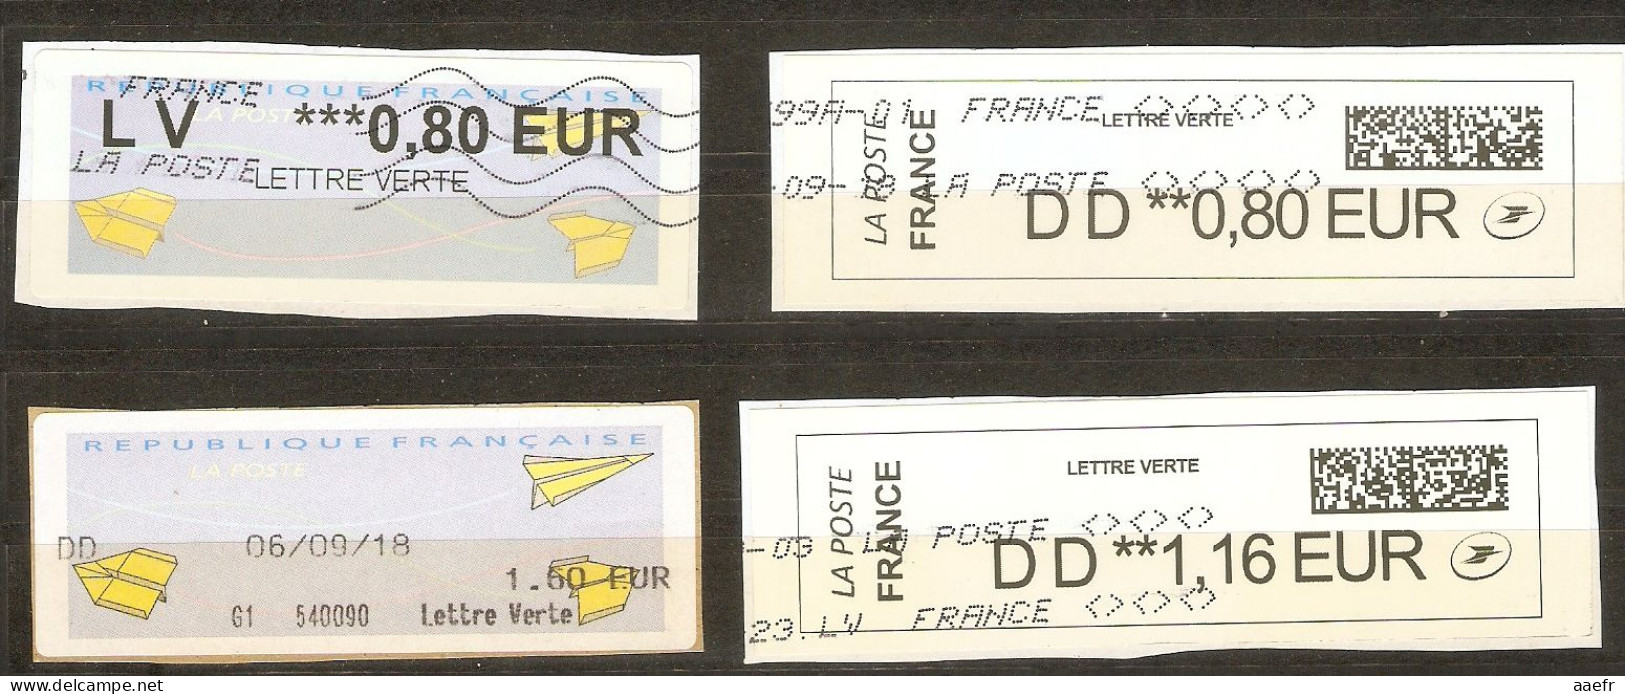 France -  Petit Lot De 4 Vignettes ATM Type Avions En Papier - Lettres Vertes - 3 DD + 1 LV - 2 QR Codes - 2000 Type « Avions En Papier »